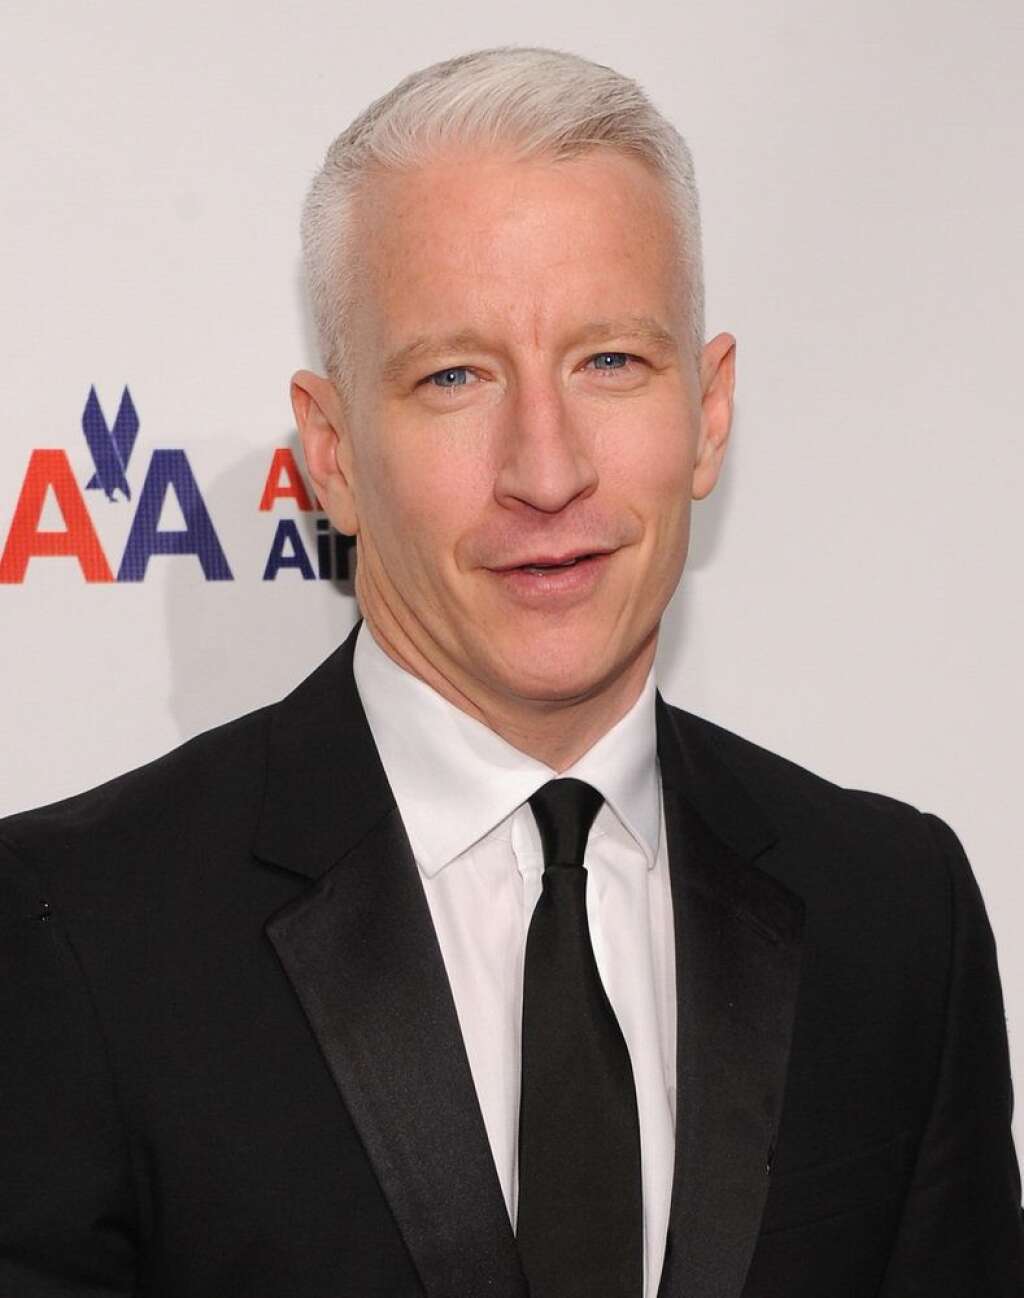 Anderson Cooper - Anderson Cooper a avoué dans son émission "<a href="http://www.dailymail.co.uk/femail/article-2244125/Anderson-Cooper-reveals-wears-jeans-day-washes-times-year--shower.html">Anderson Live</a>" qu'il portait tout le temps les mêmes jeans et qu'il les lavait très rarement. "Le peu de fois où je les lave, c'est-à-dire deux fois tous les six mois, je vais sous la douche avec mon jeans, je frotte mon pantalon avec du savon et je le garde sur moi pour qu'il sèche, n'est-ce pas ce qu'il faut faire?", a-t-il dit.